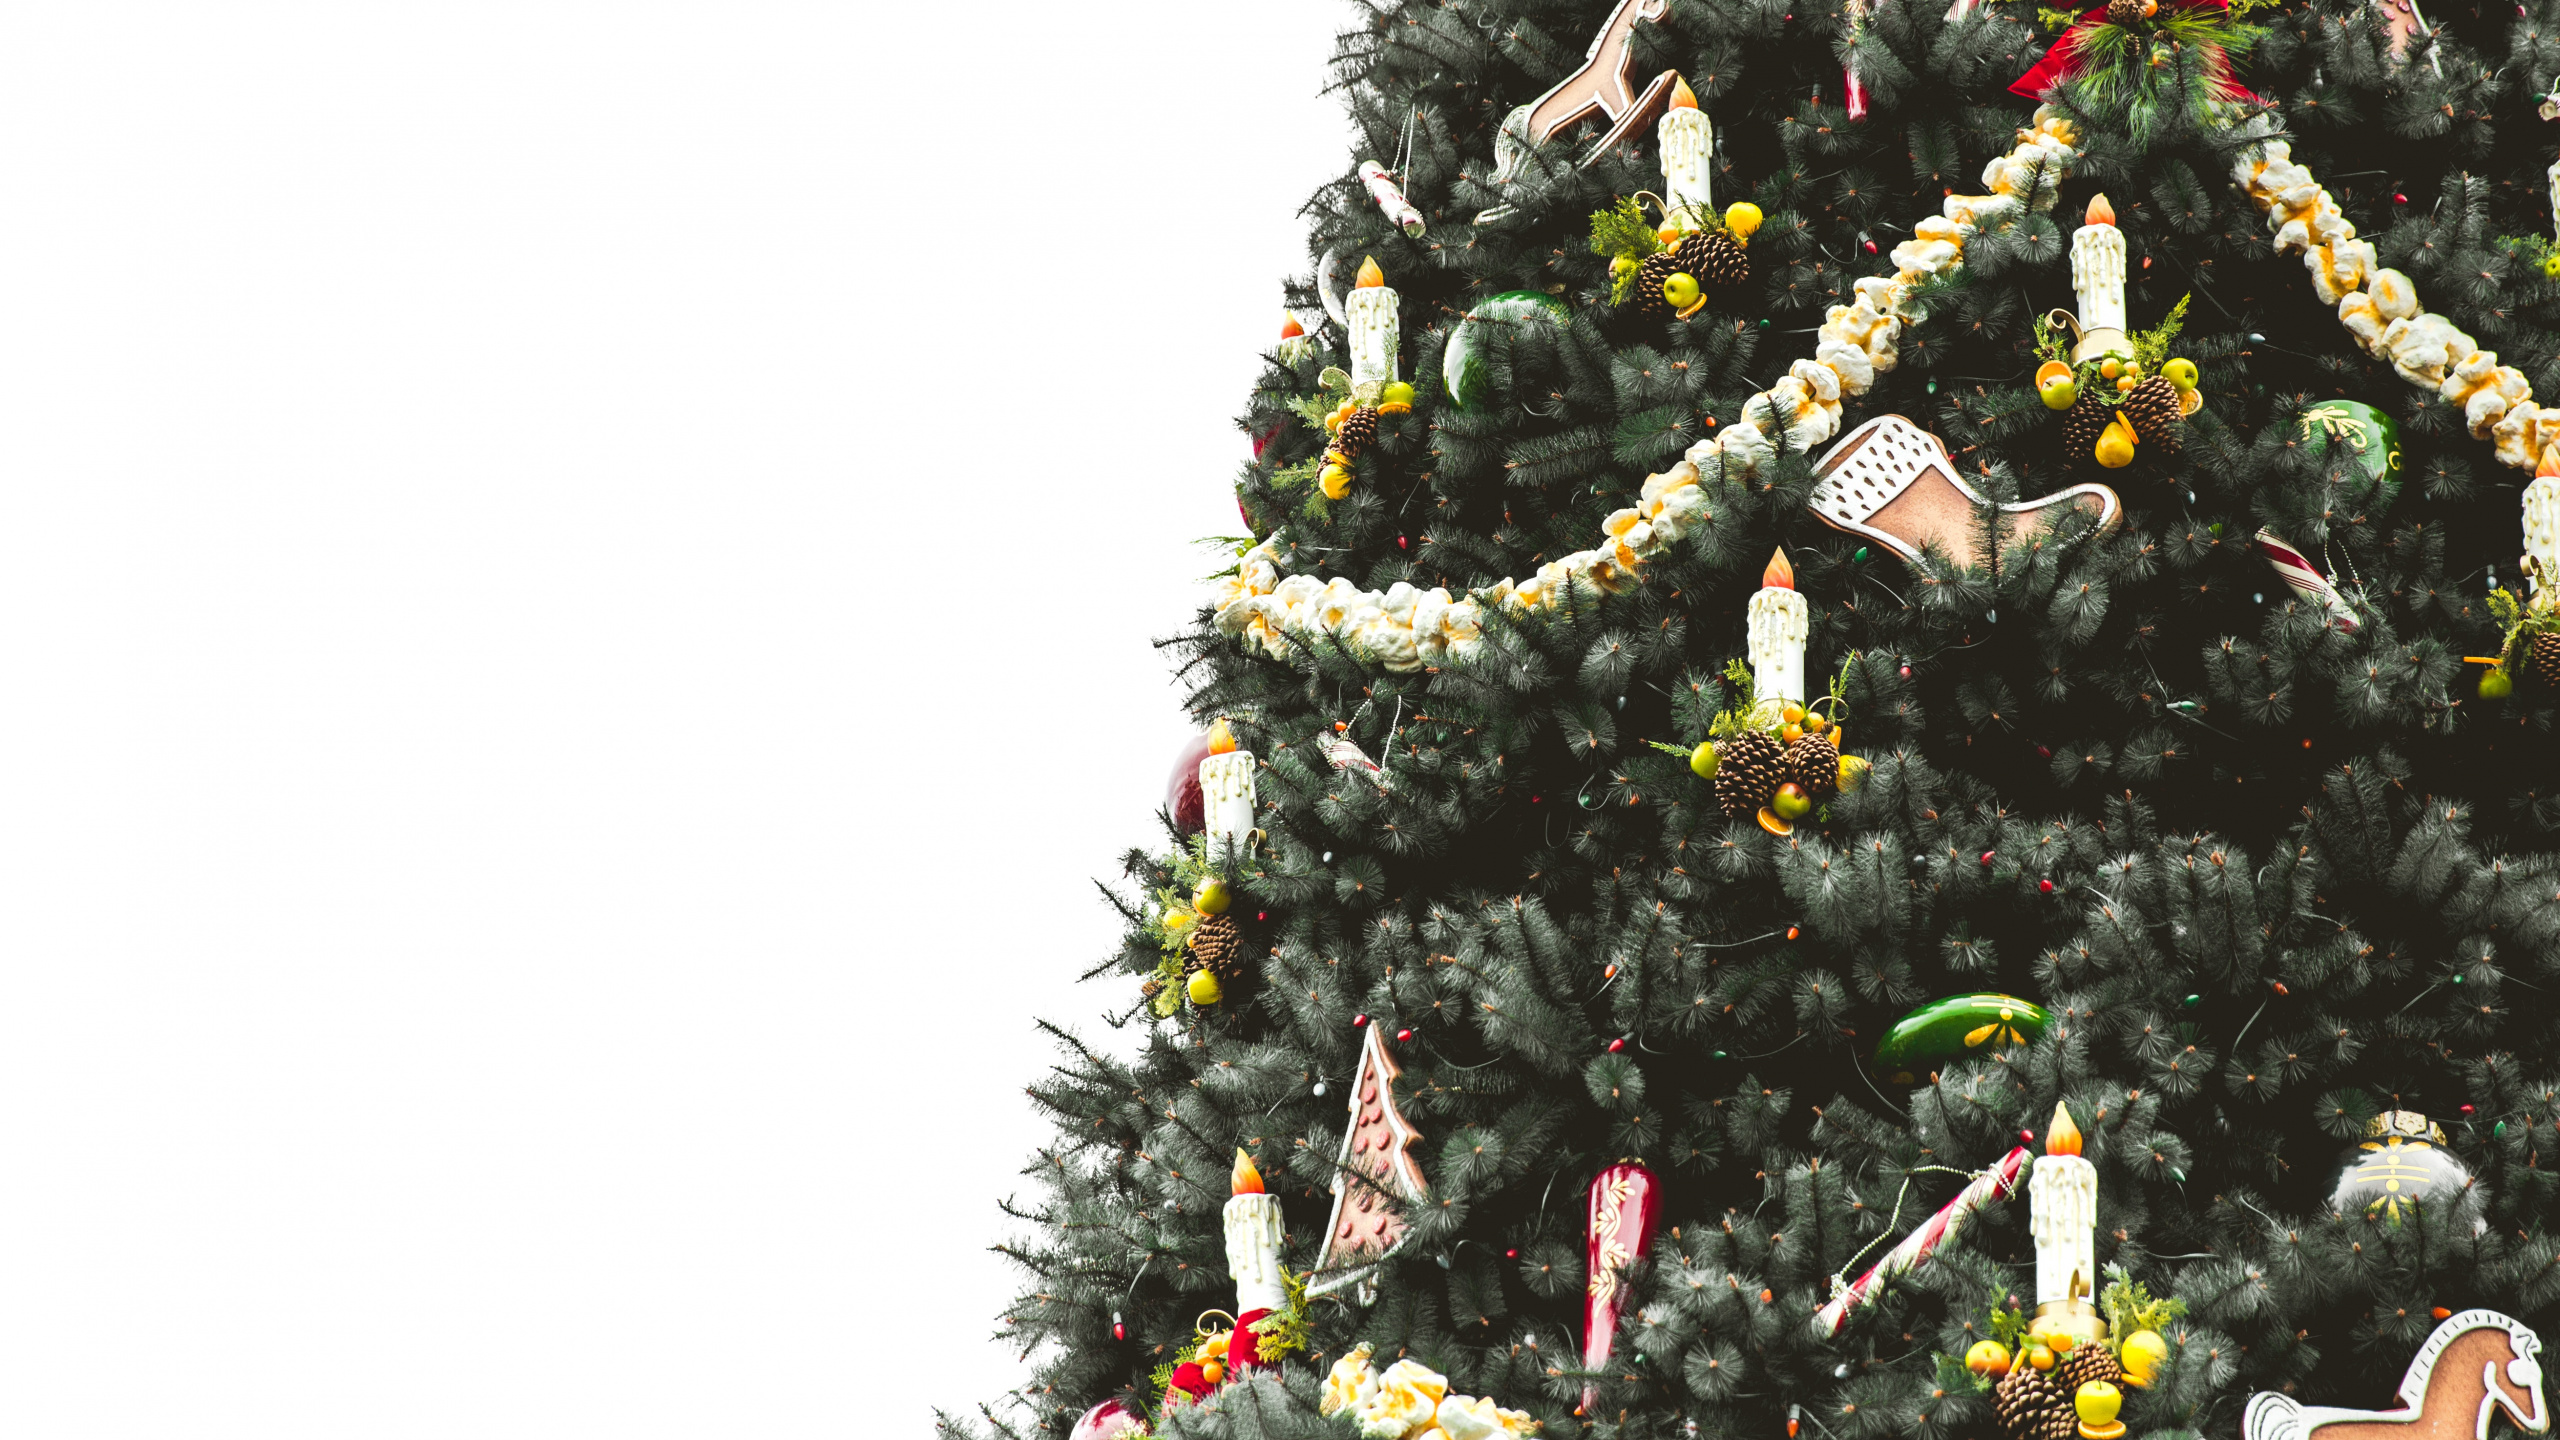 El Día De Navidad, la Navidad y la Temporada de Vacaciones, Planta Leñosa, Evergreen, Decoración de la Navidad. Wallpaper in 2560x1440 Resolution